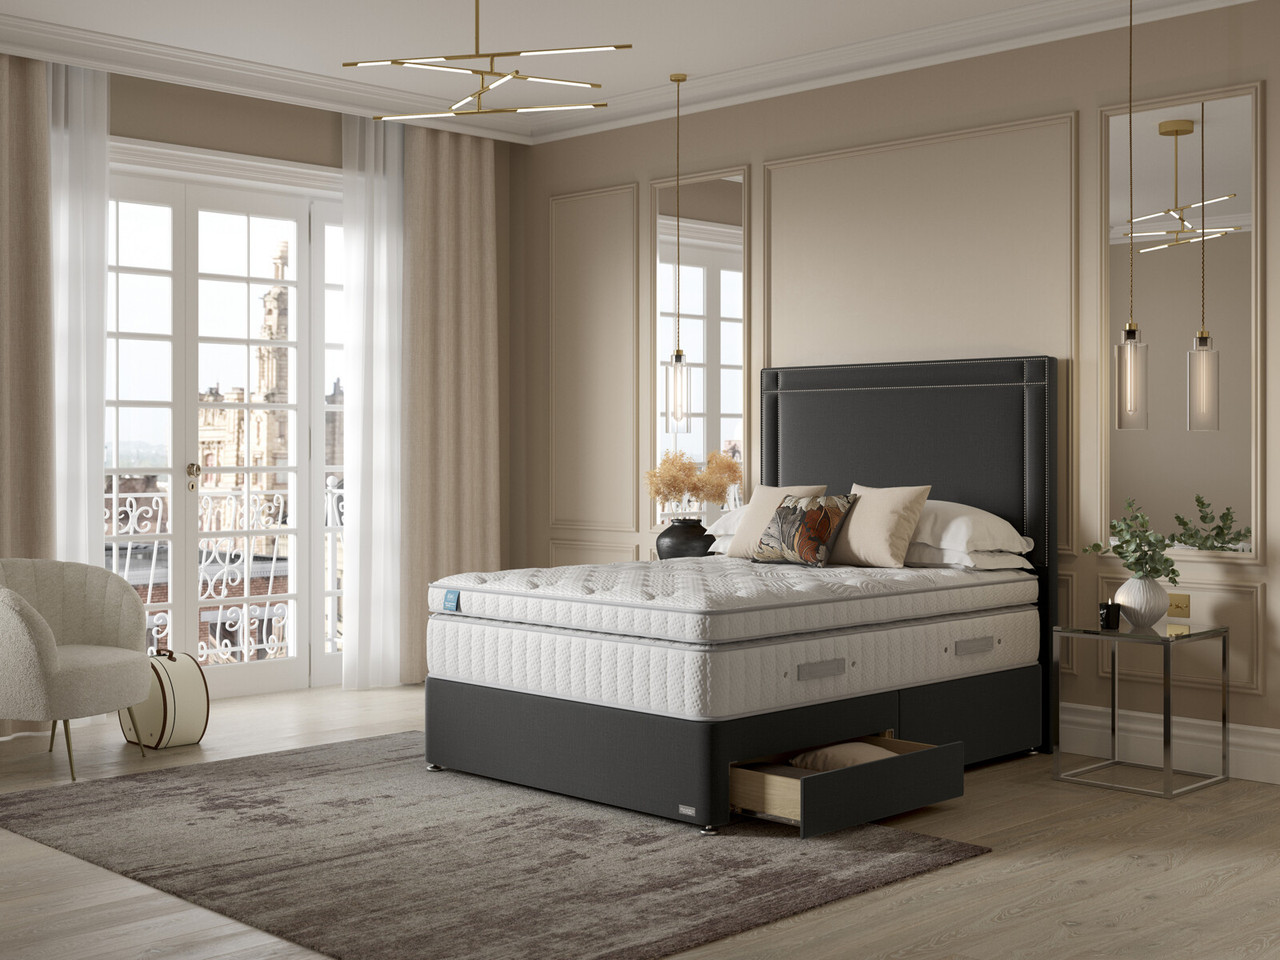 Igel Advance 4400i Plush Top Divan Bed Set On Glides Super King French Grey